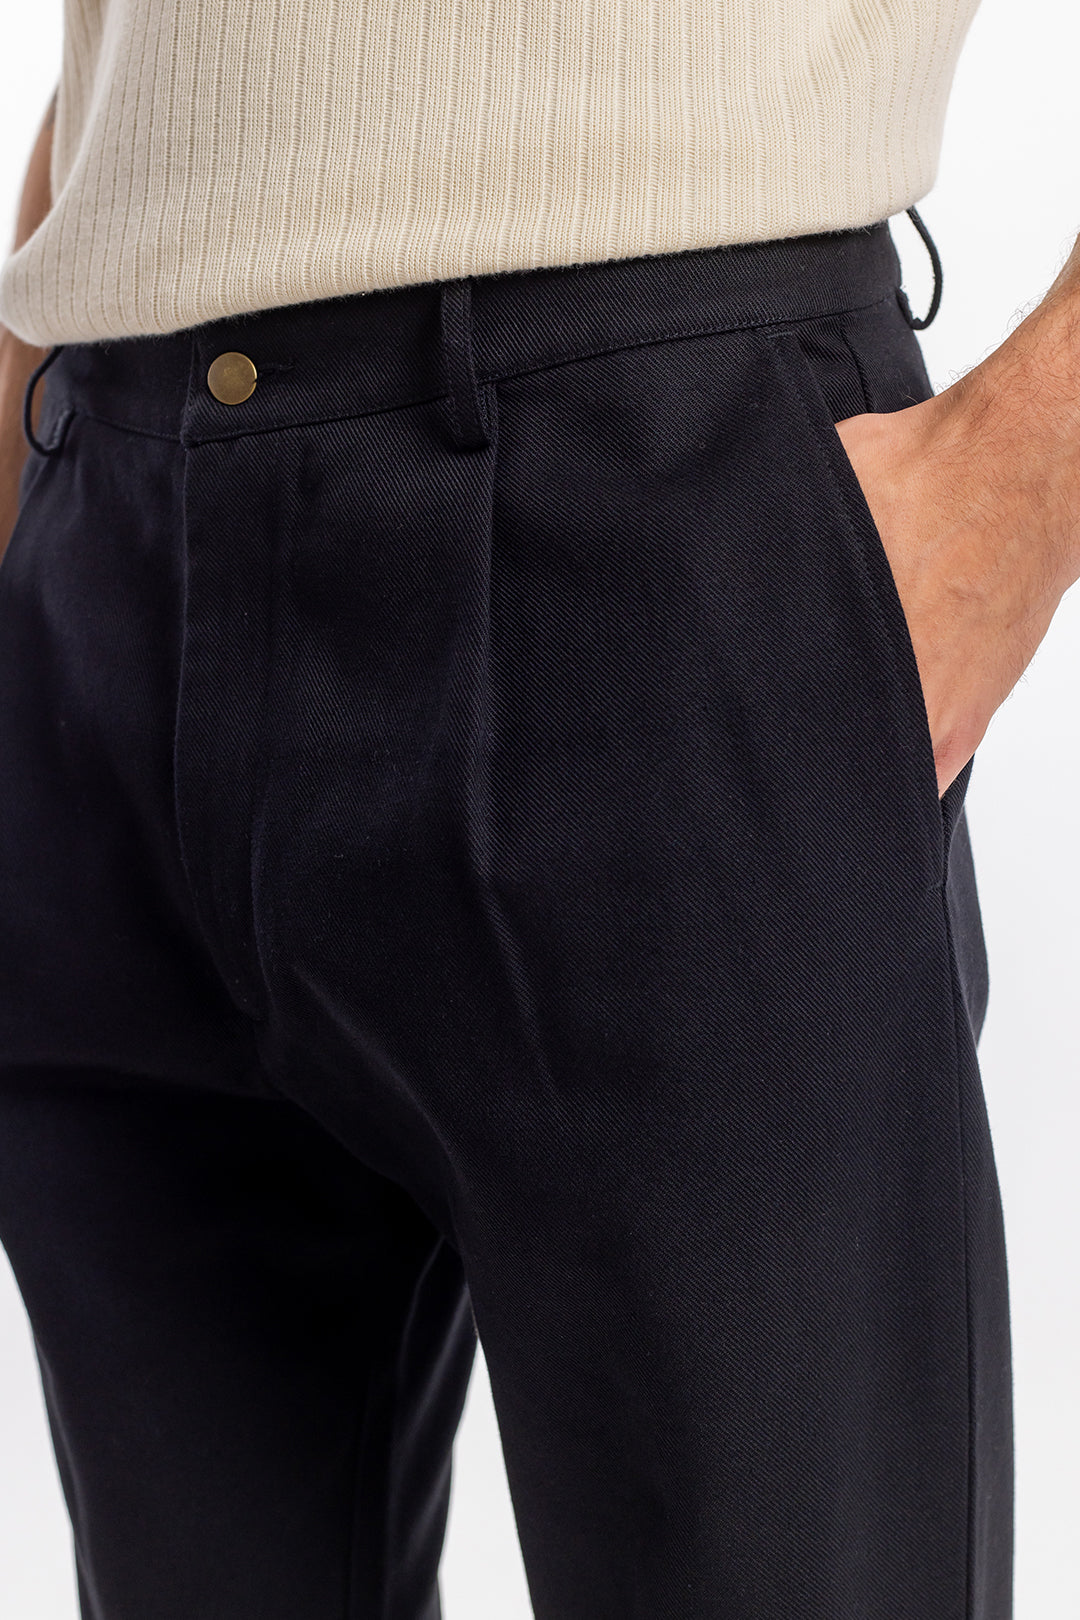 Pantalon noir en coton 100% biologique de Rotholz